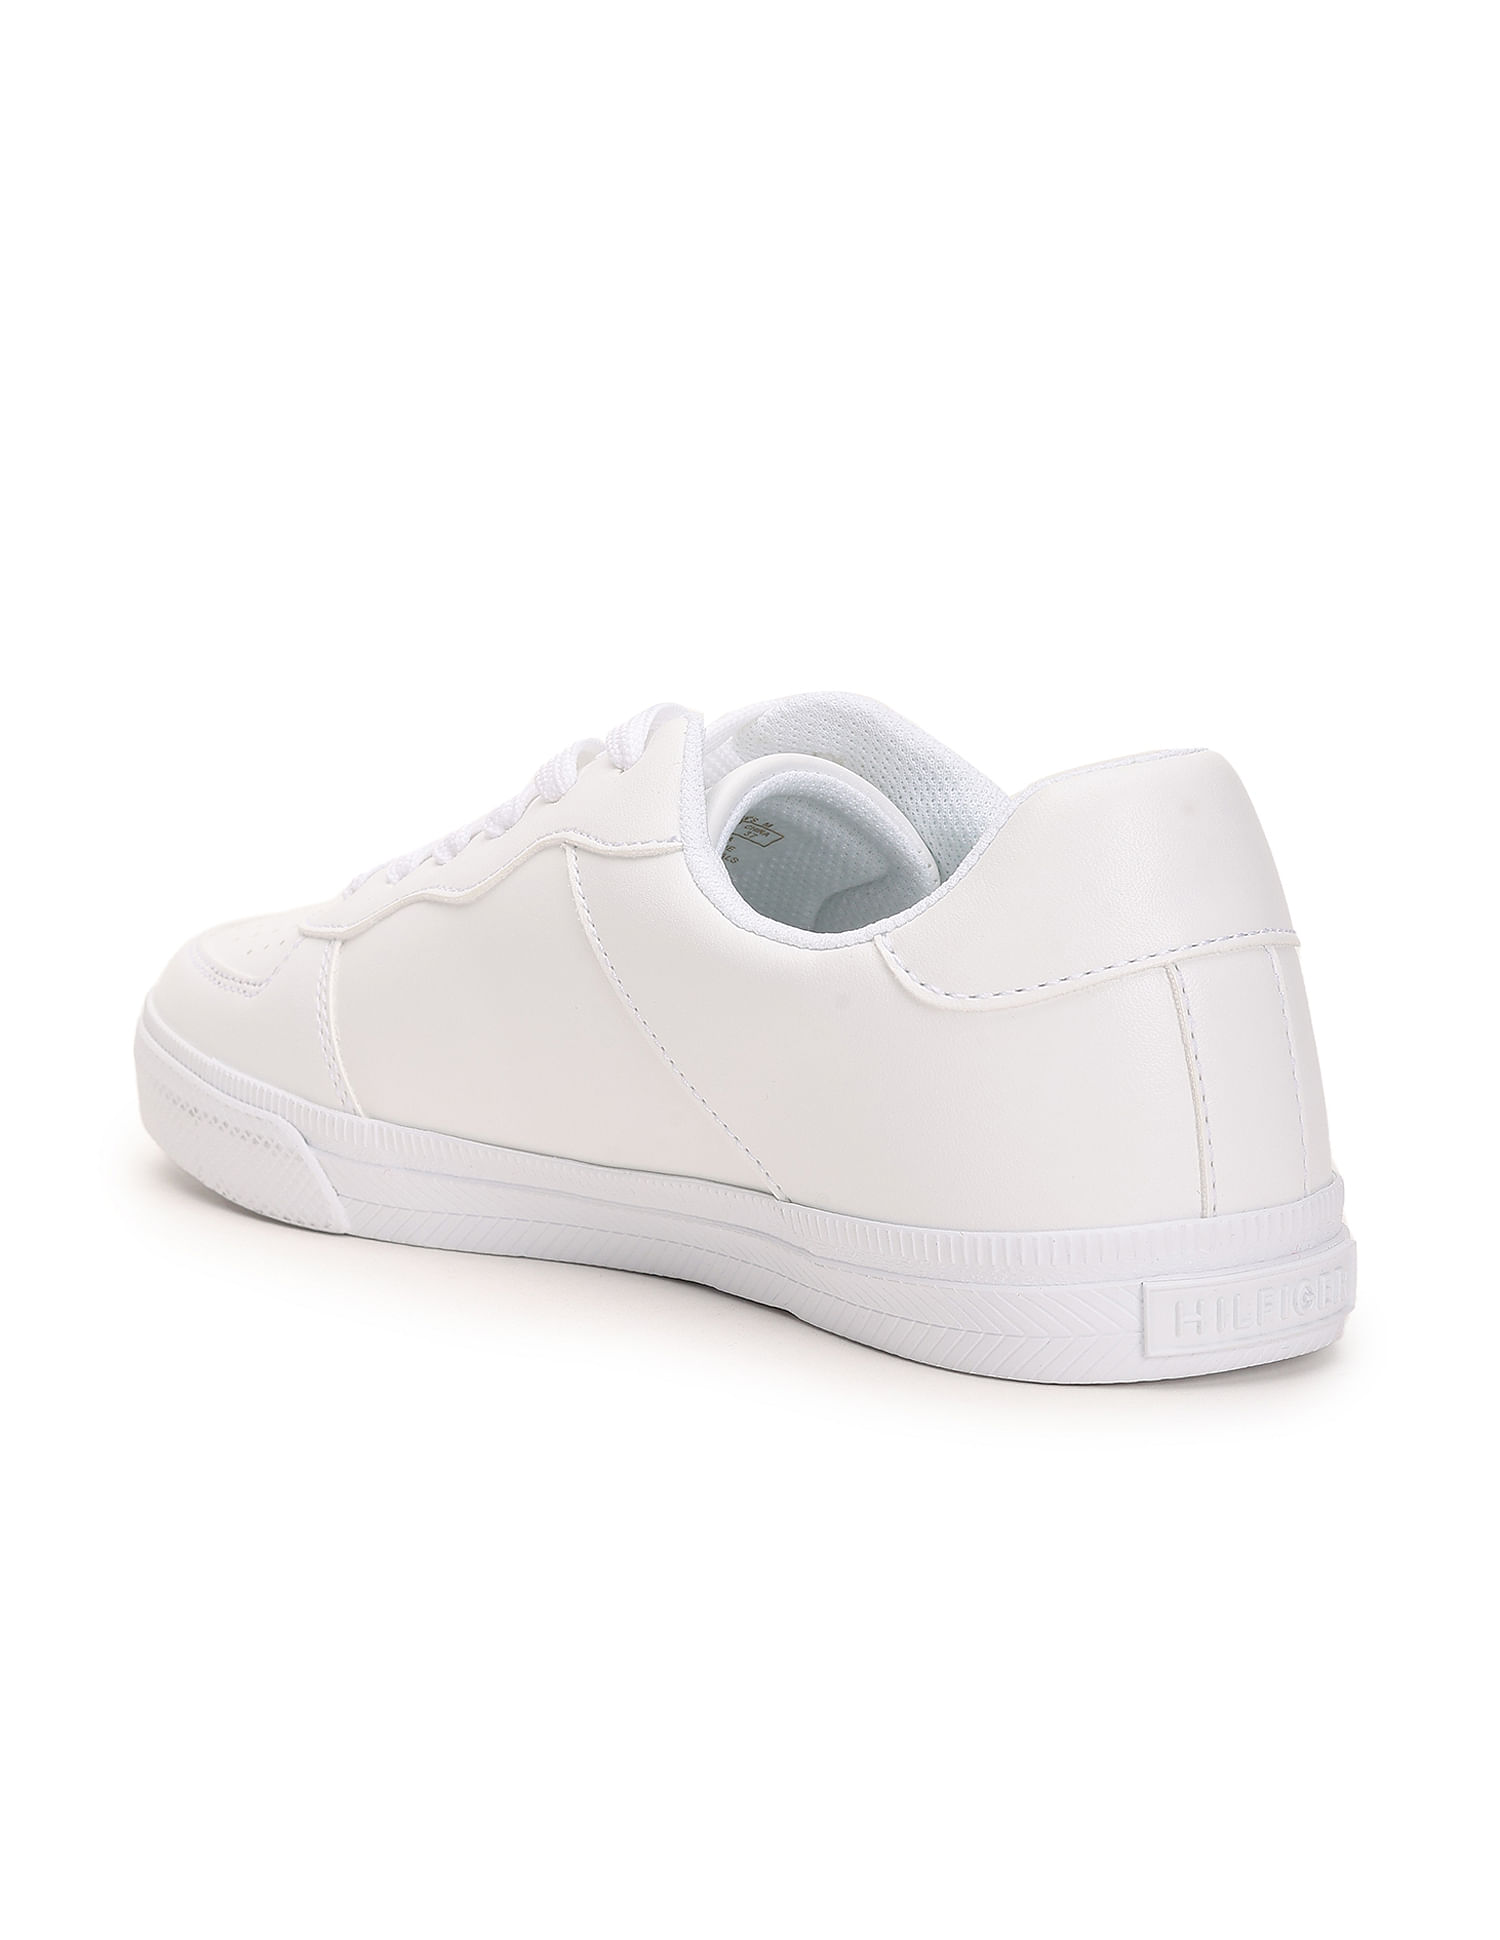 Paul Green Newport Leather Sneaker in White | Lyst